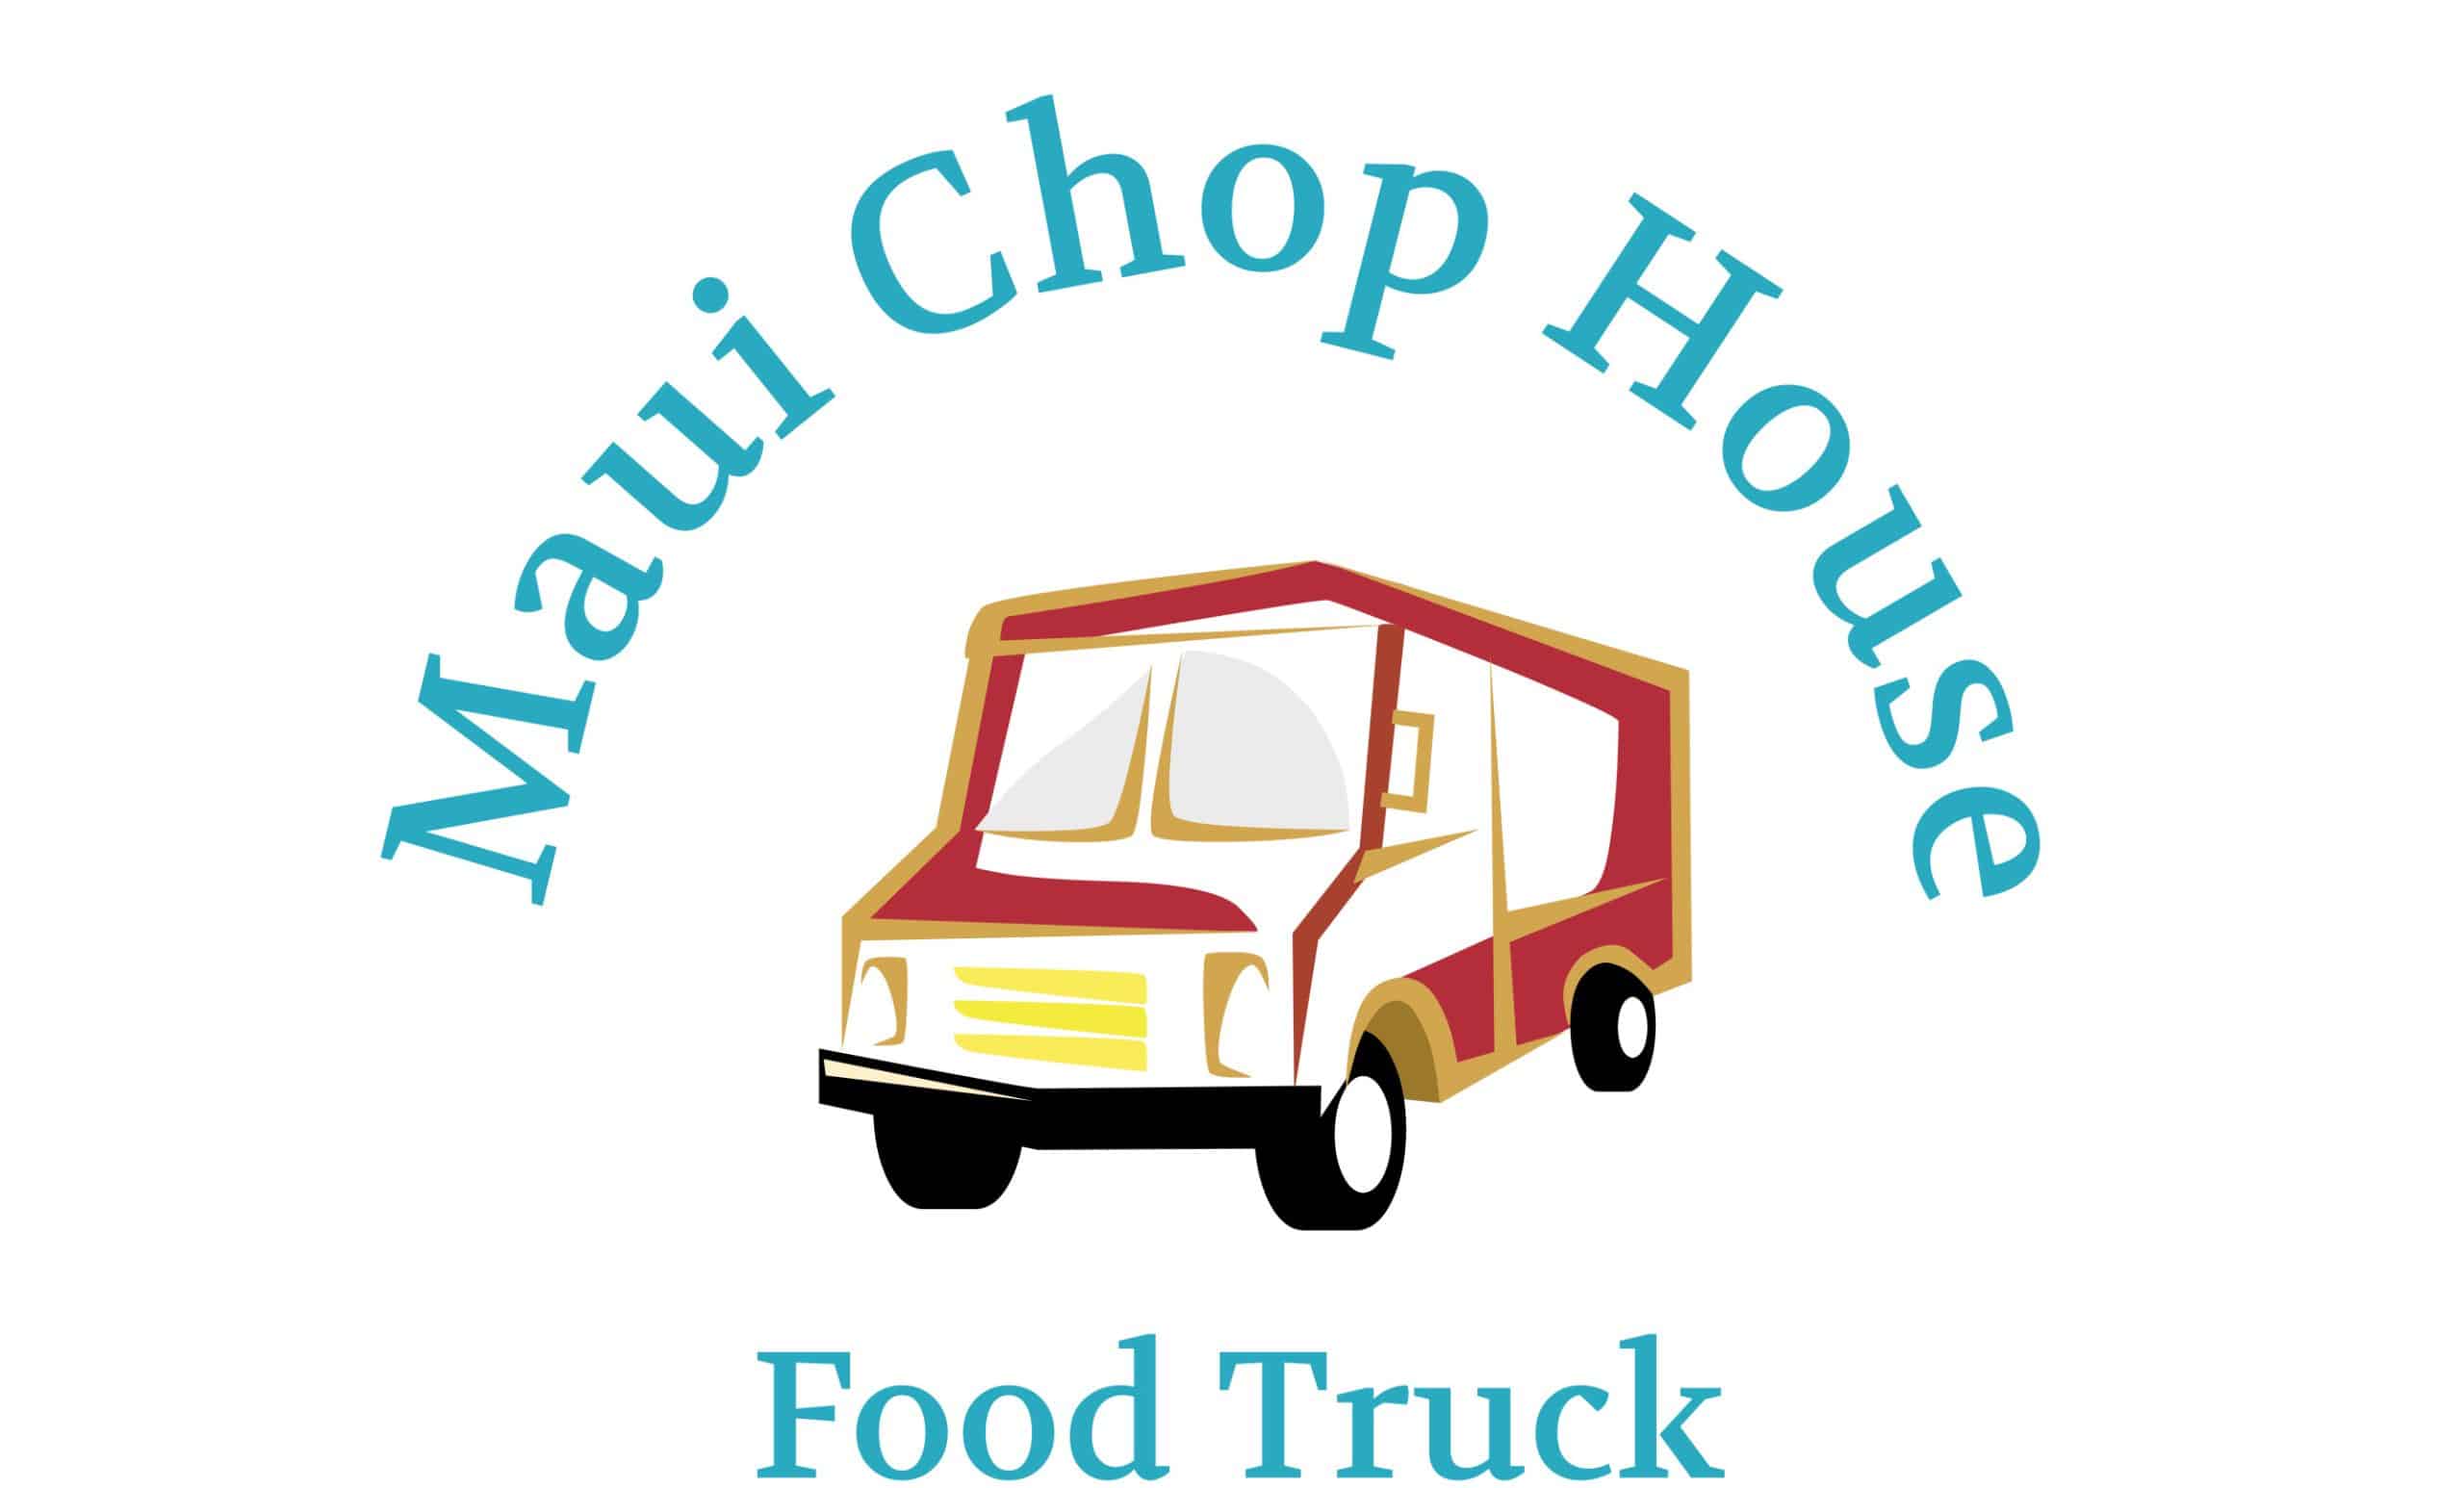 maui chop house logo on white